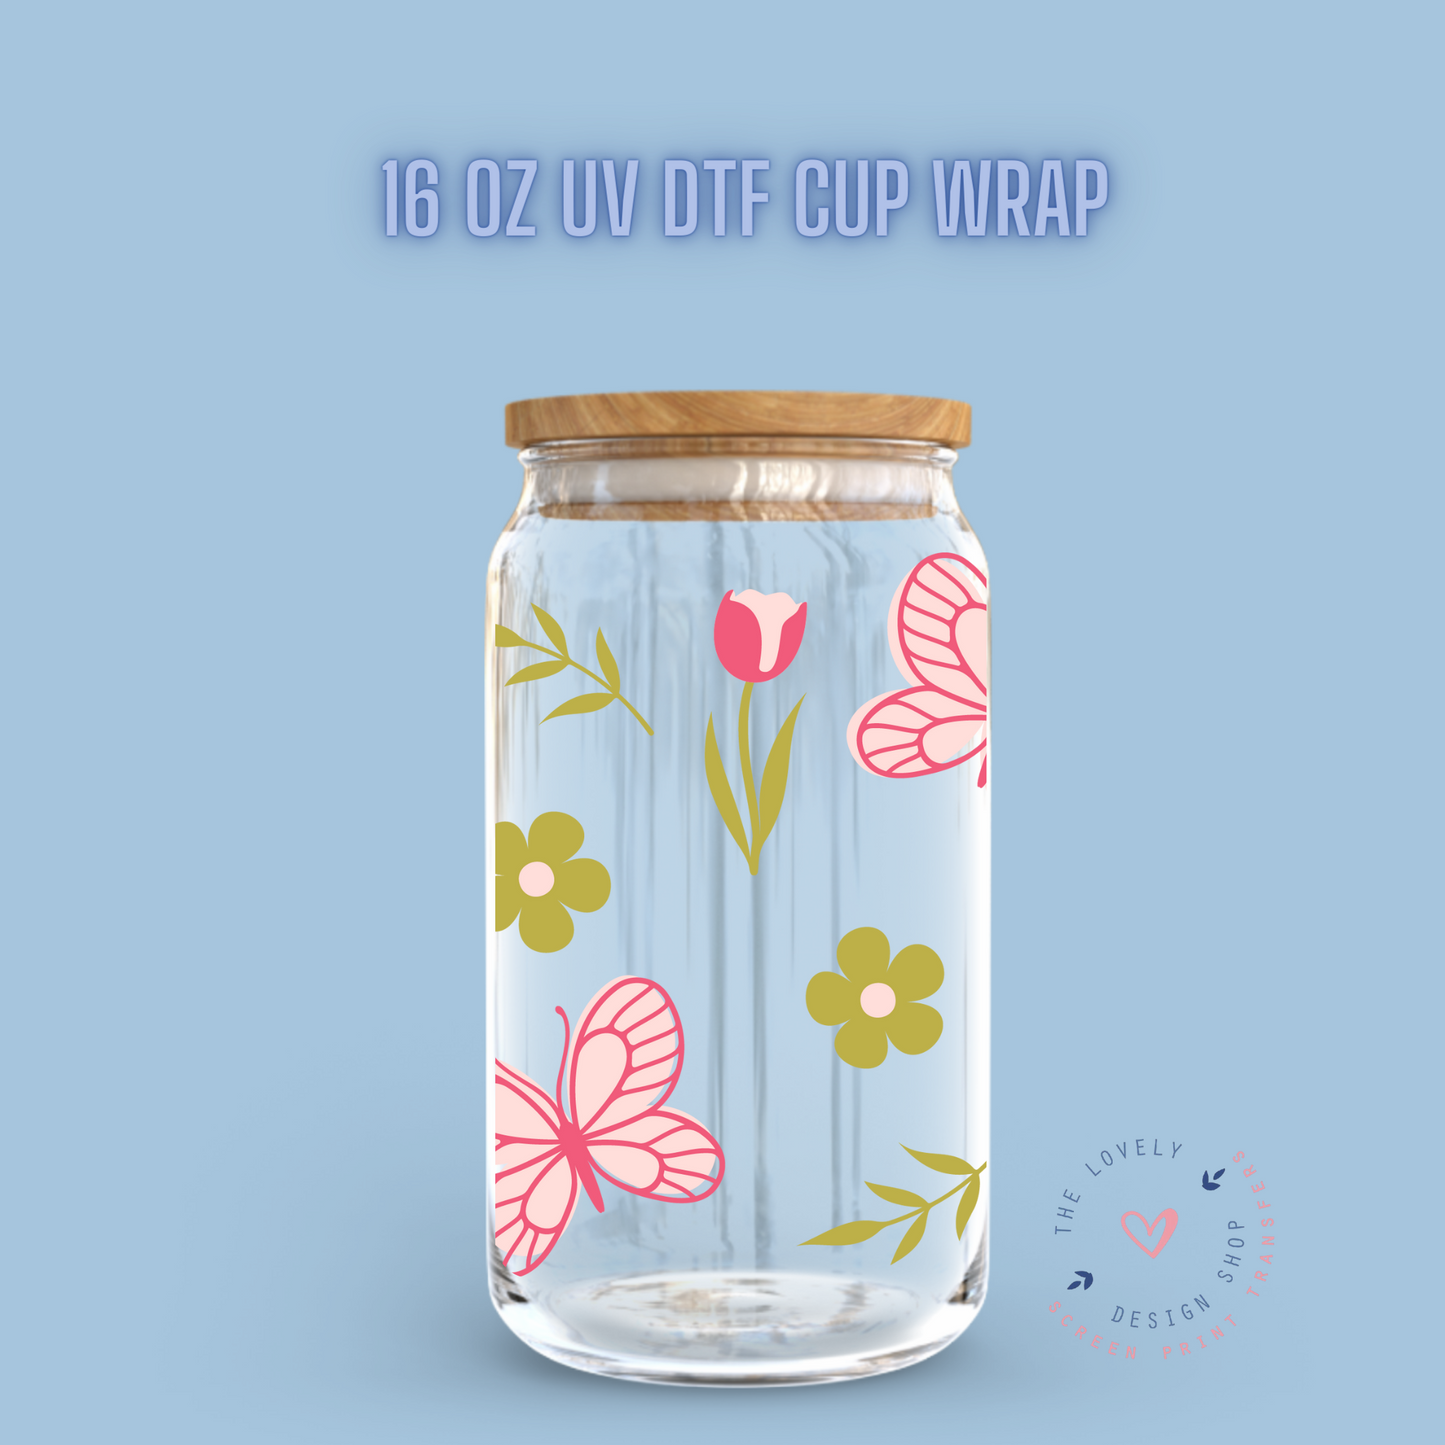 Spring Garden Butterflies - UV DTF 16 oz Libbey Cup Wrap (Ready to Ship) Feb 5